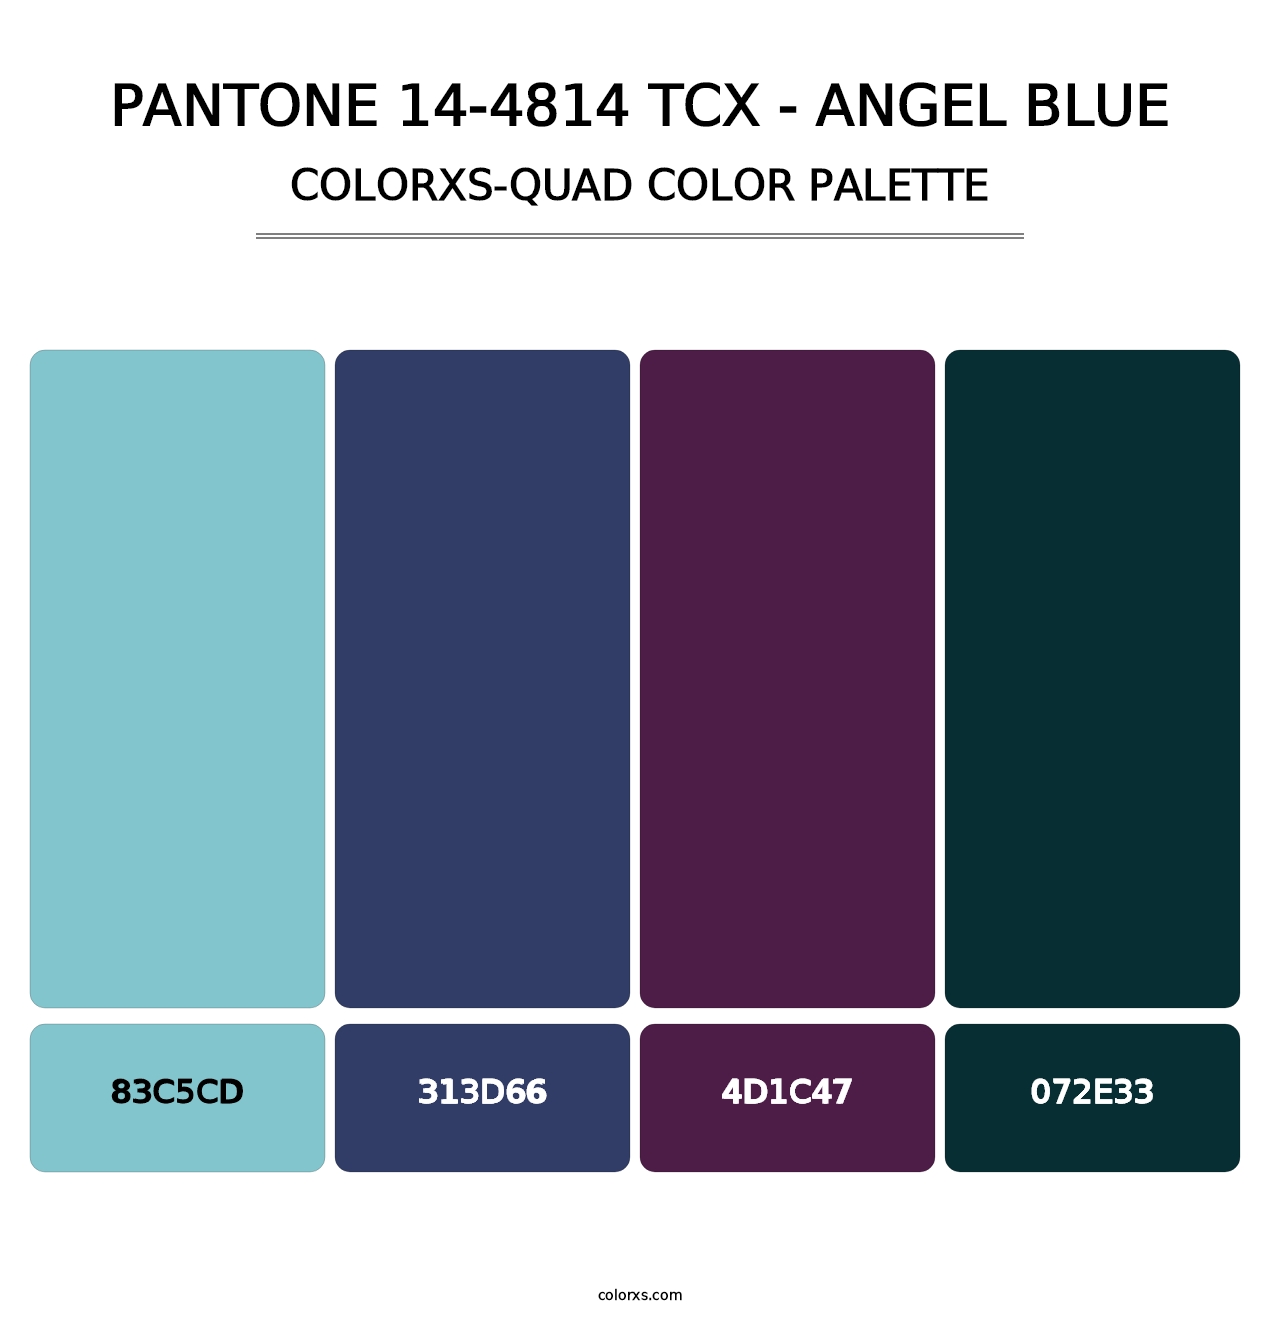 PANTONE 14-4814 TCX - Angel Blue - Colorxs Quad Palette